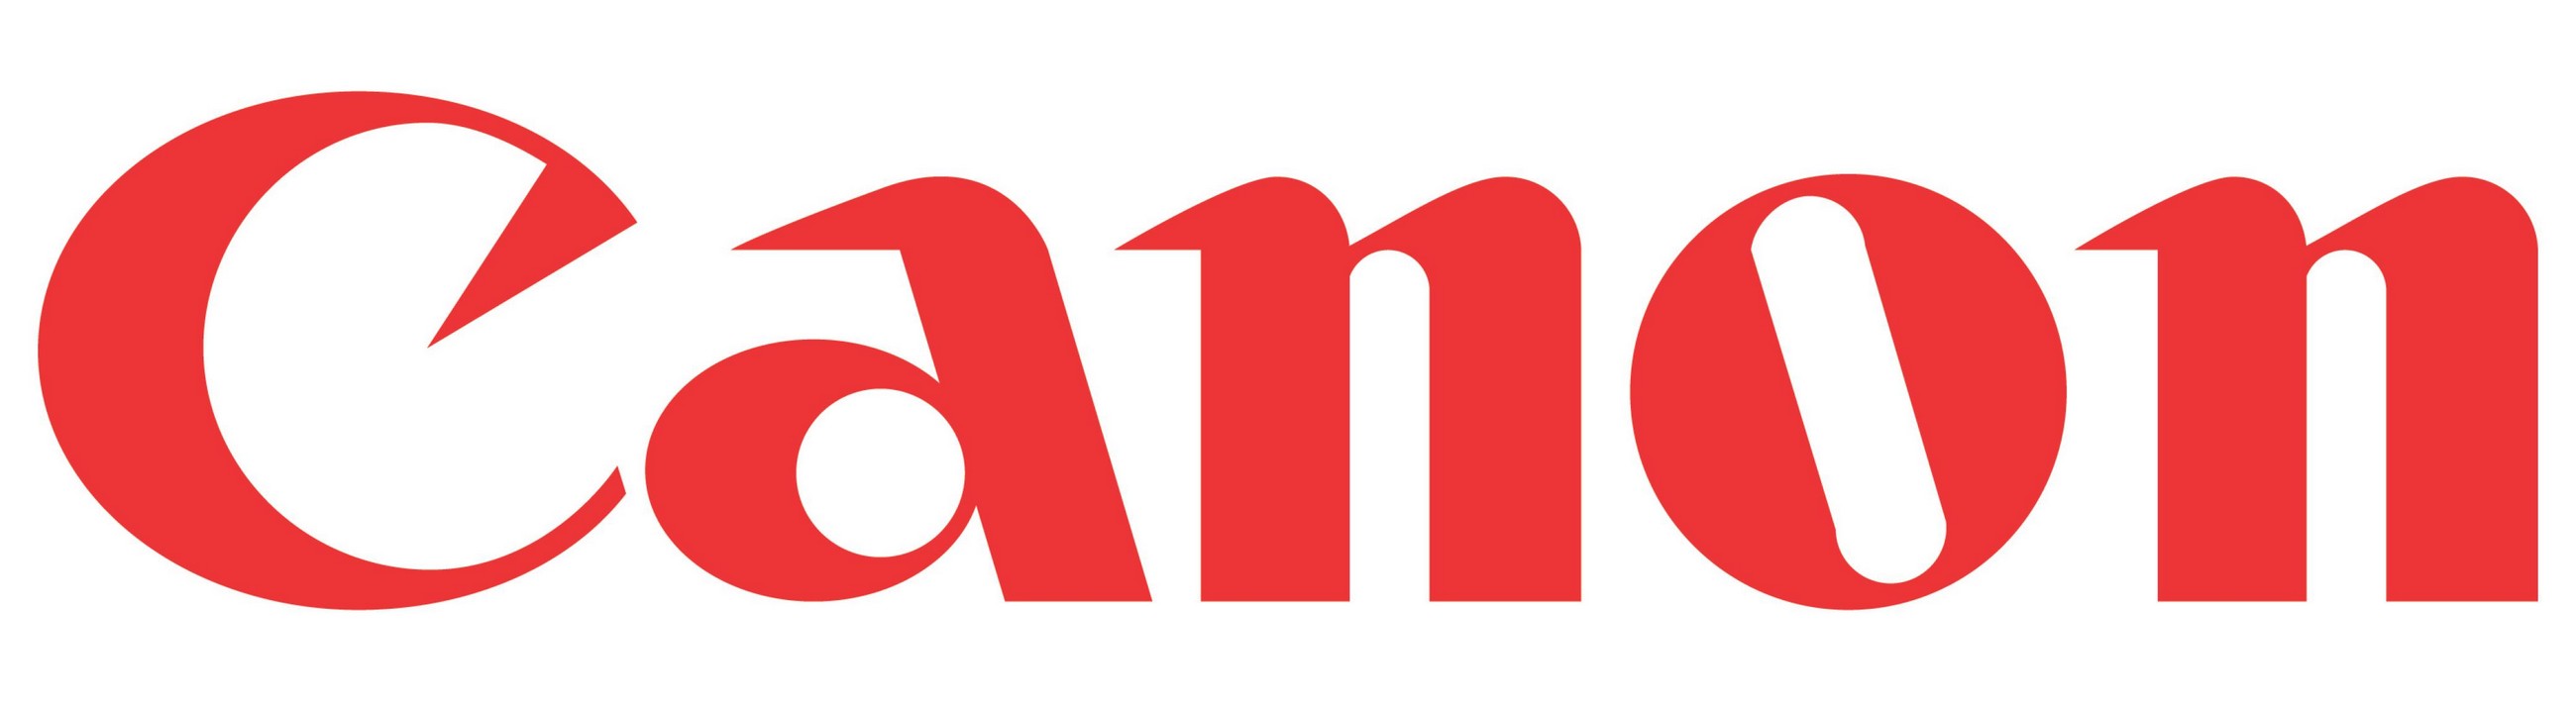 Canon-logo-vector-download